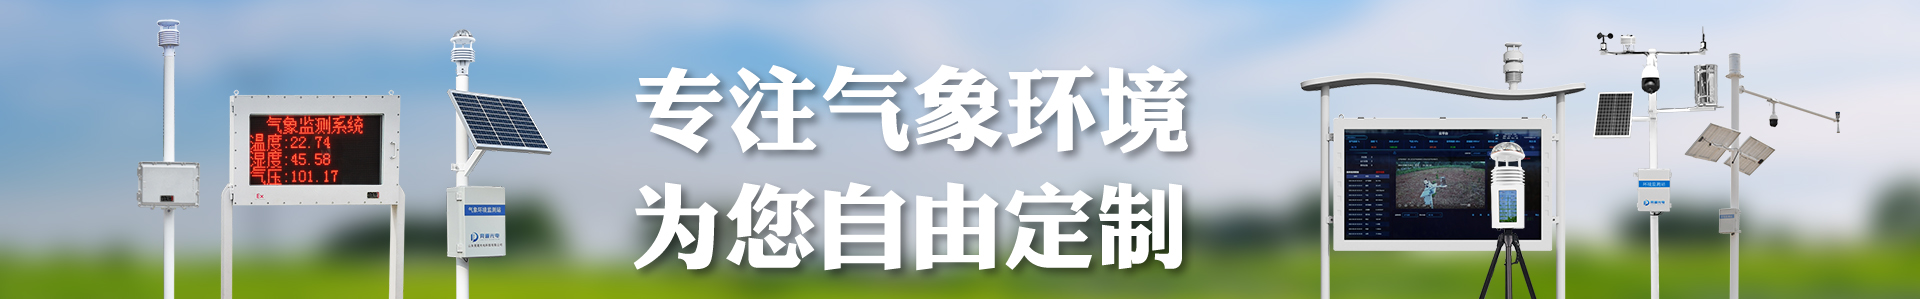 气象水文雨测设备展示视频-自动气象站-小型气象站-防爆气象站-光伏气象站-完美体育·(中国)官方网站-365WM SPORTS